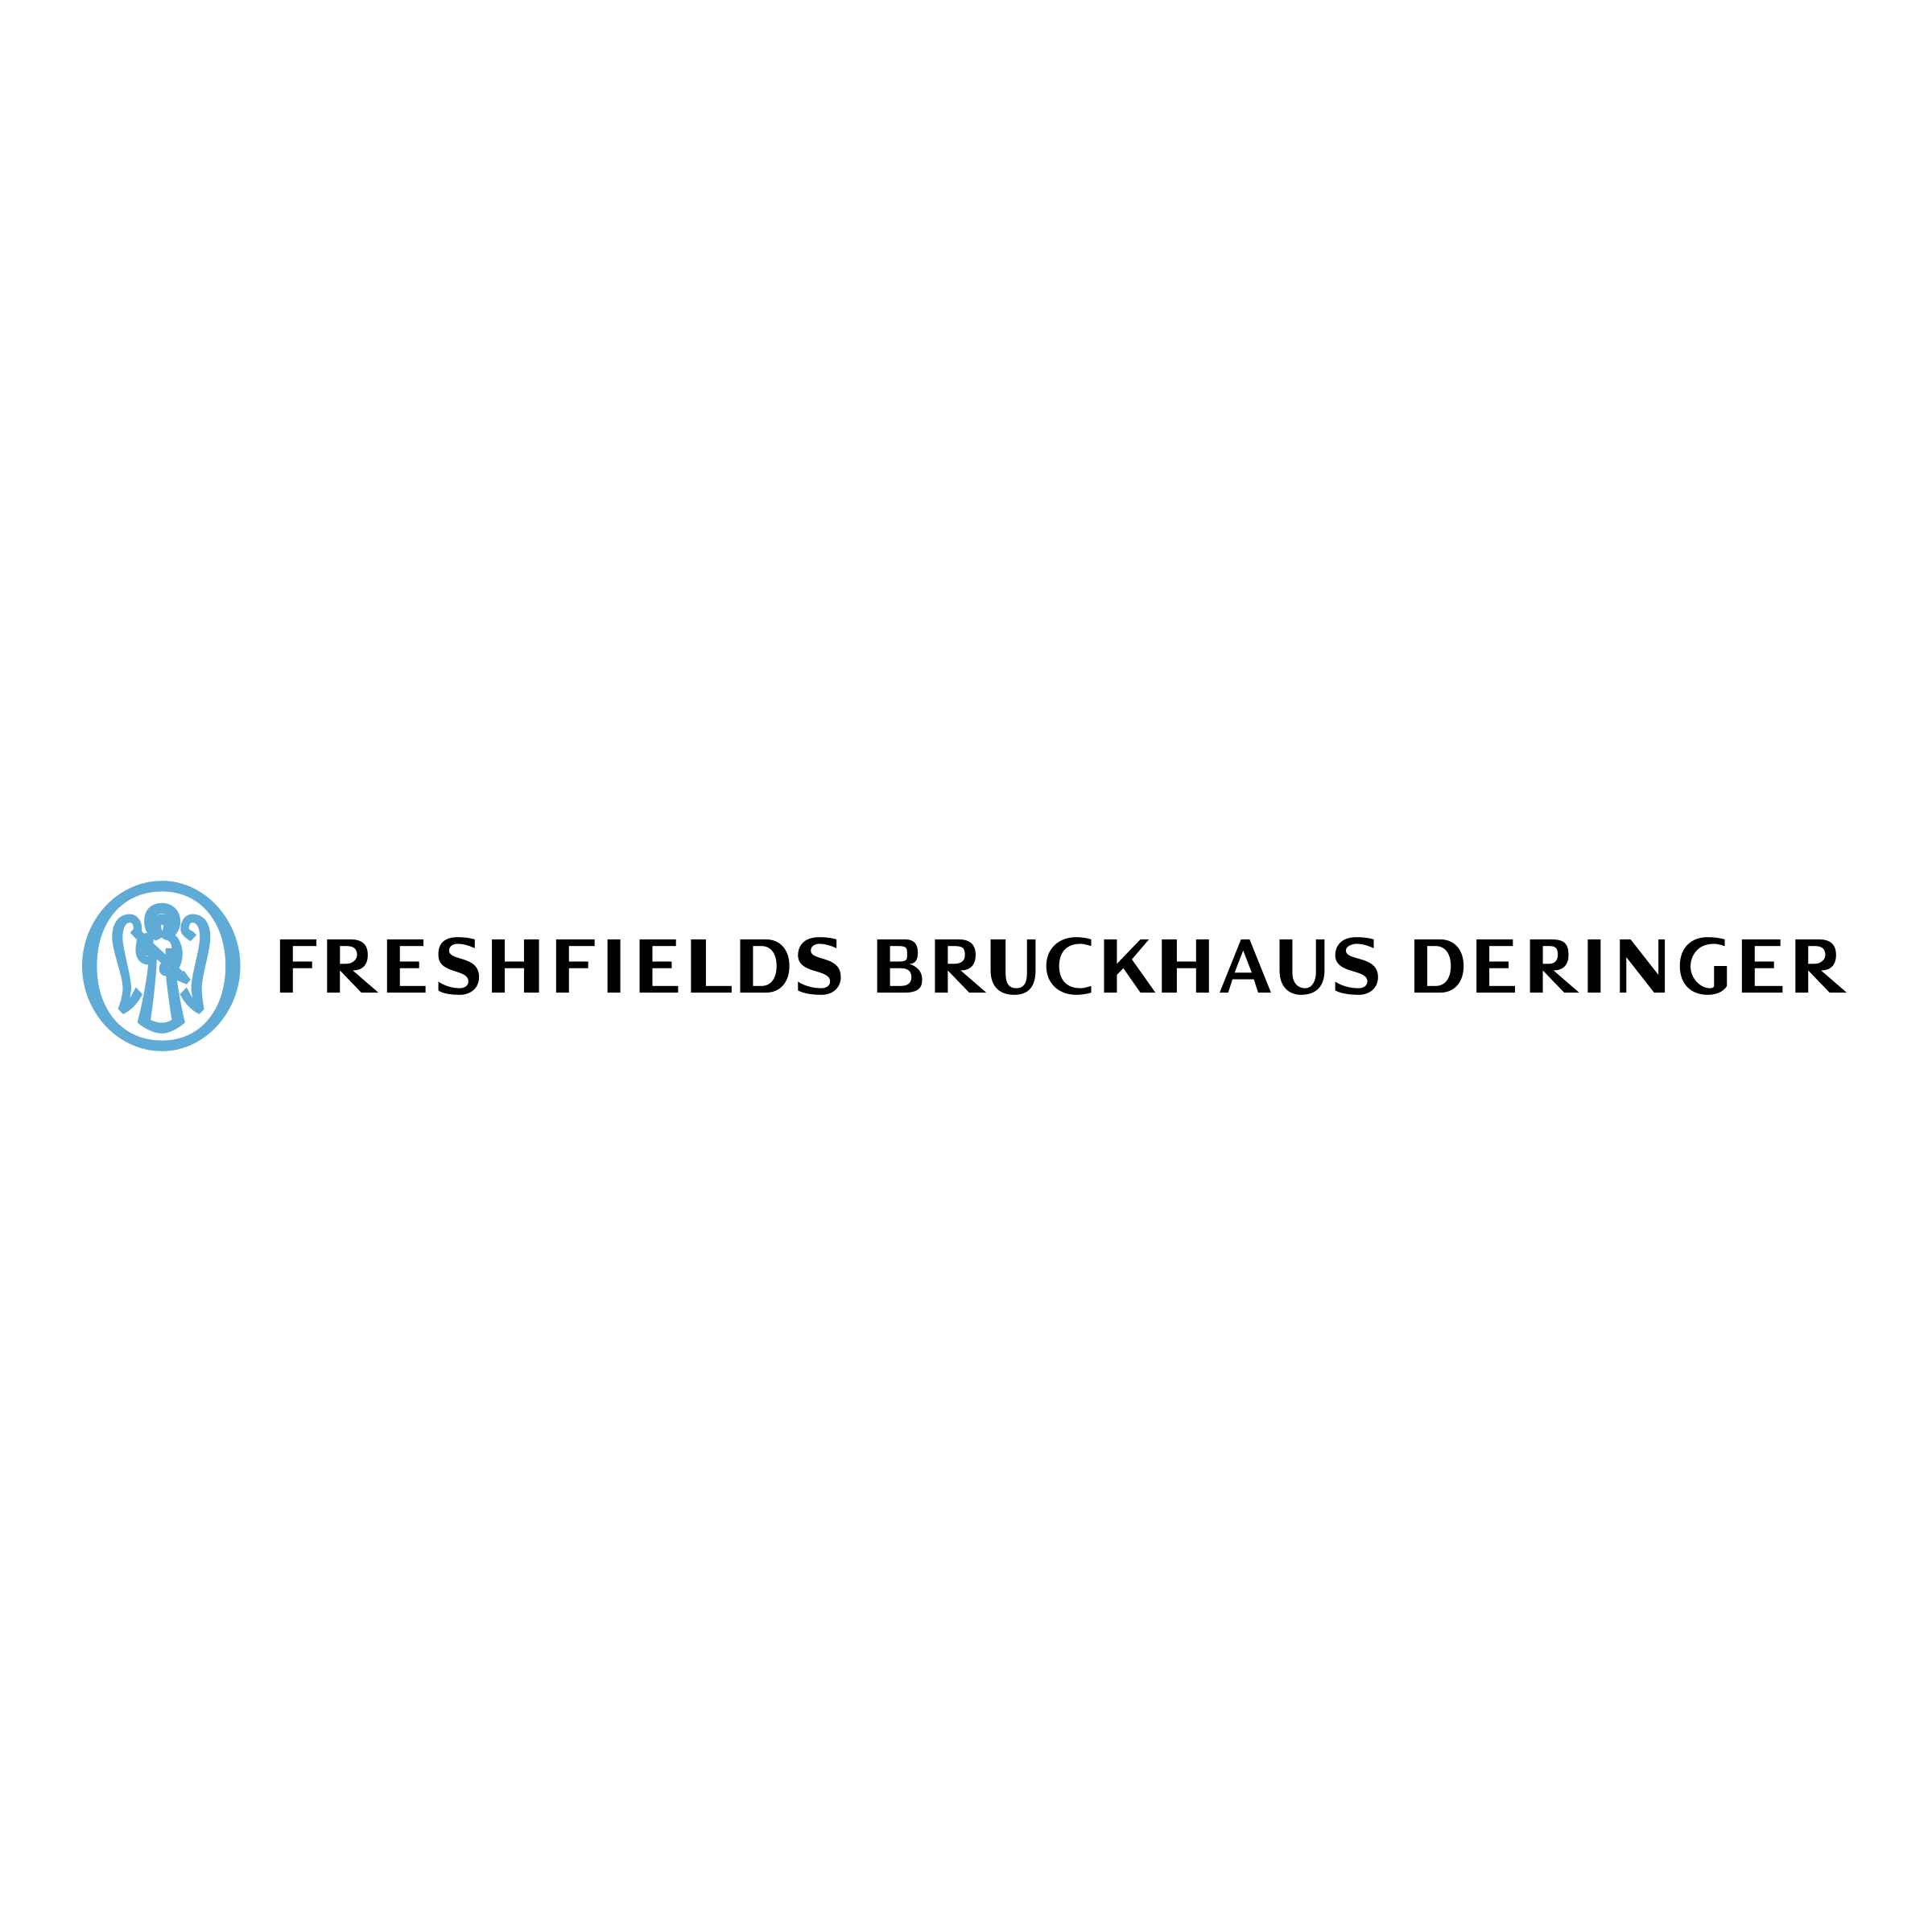 Freshfields Bruckhaus Deringer Logo - Freshfields Bruckhaus Deringer Logo PNG Transparent & SVG Vector ...